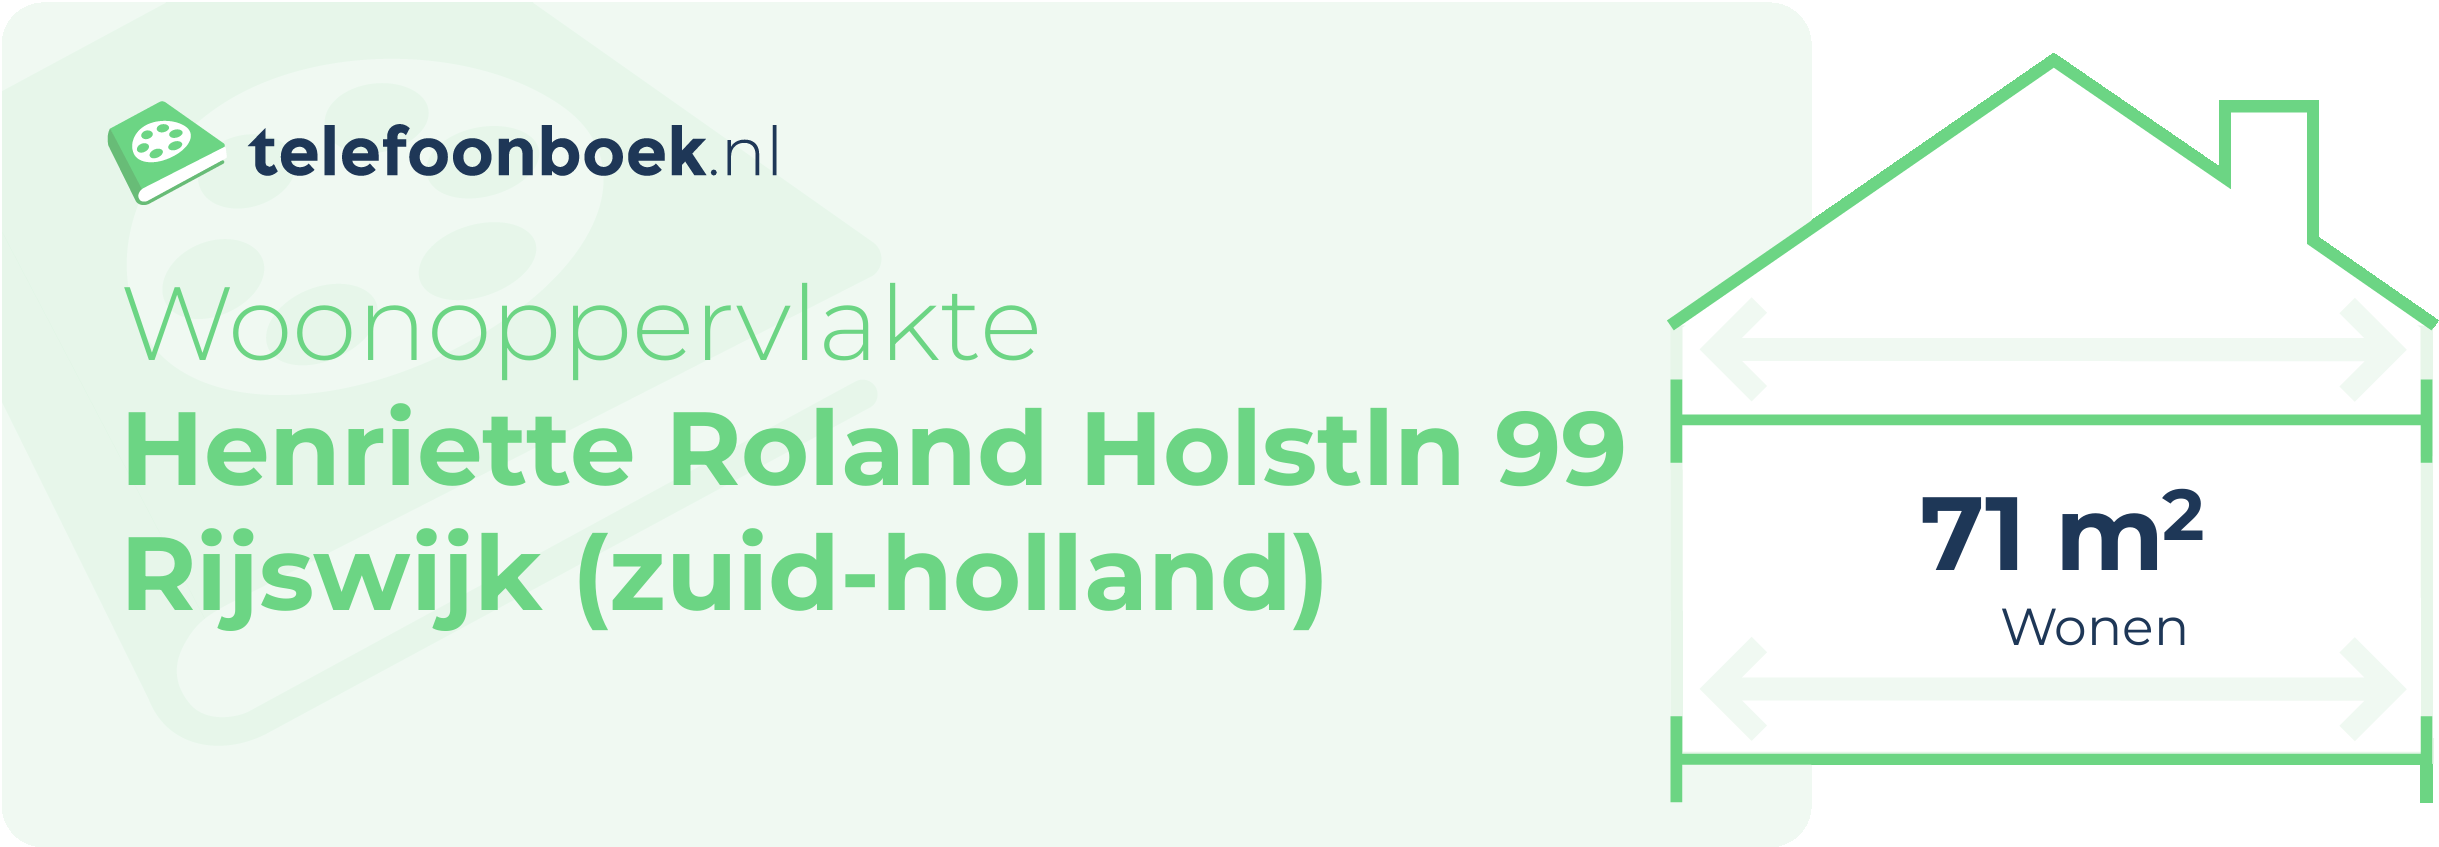 Woonoppervlakte Henriette Roland Holstln 99 Rijswijk (Zuid-Holland)